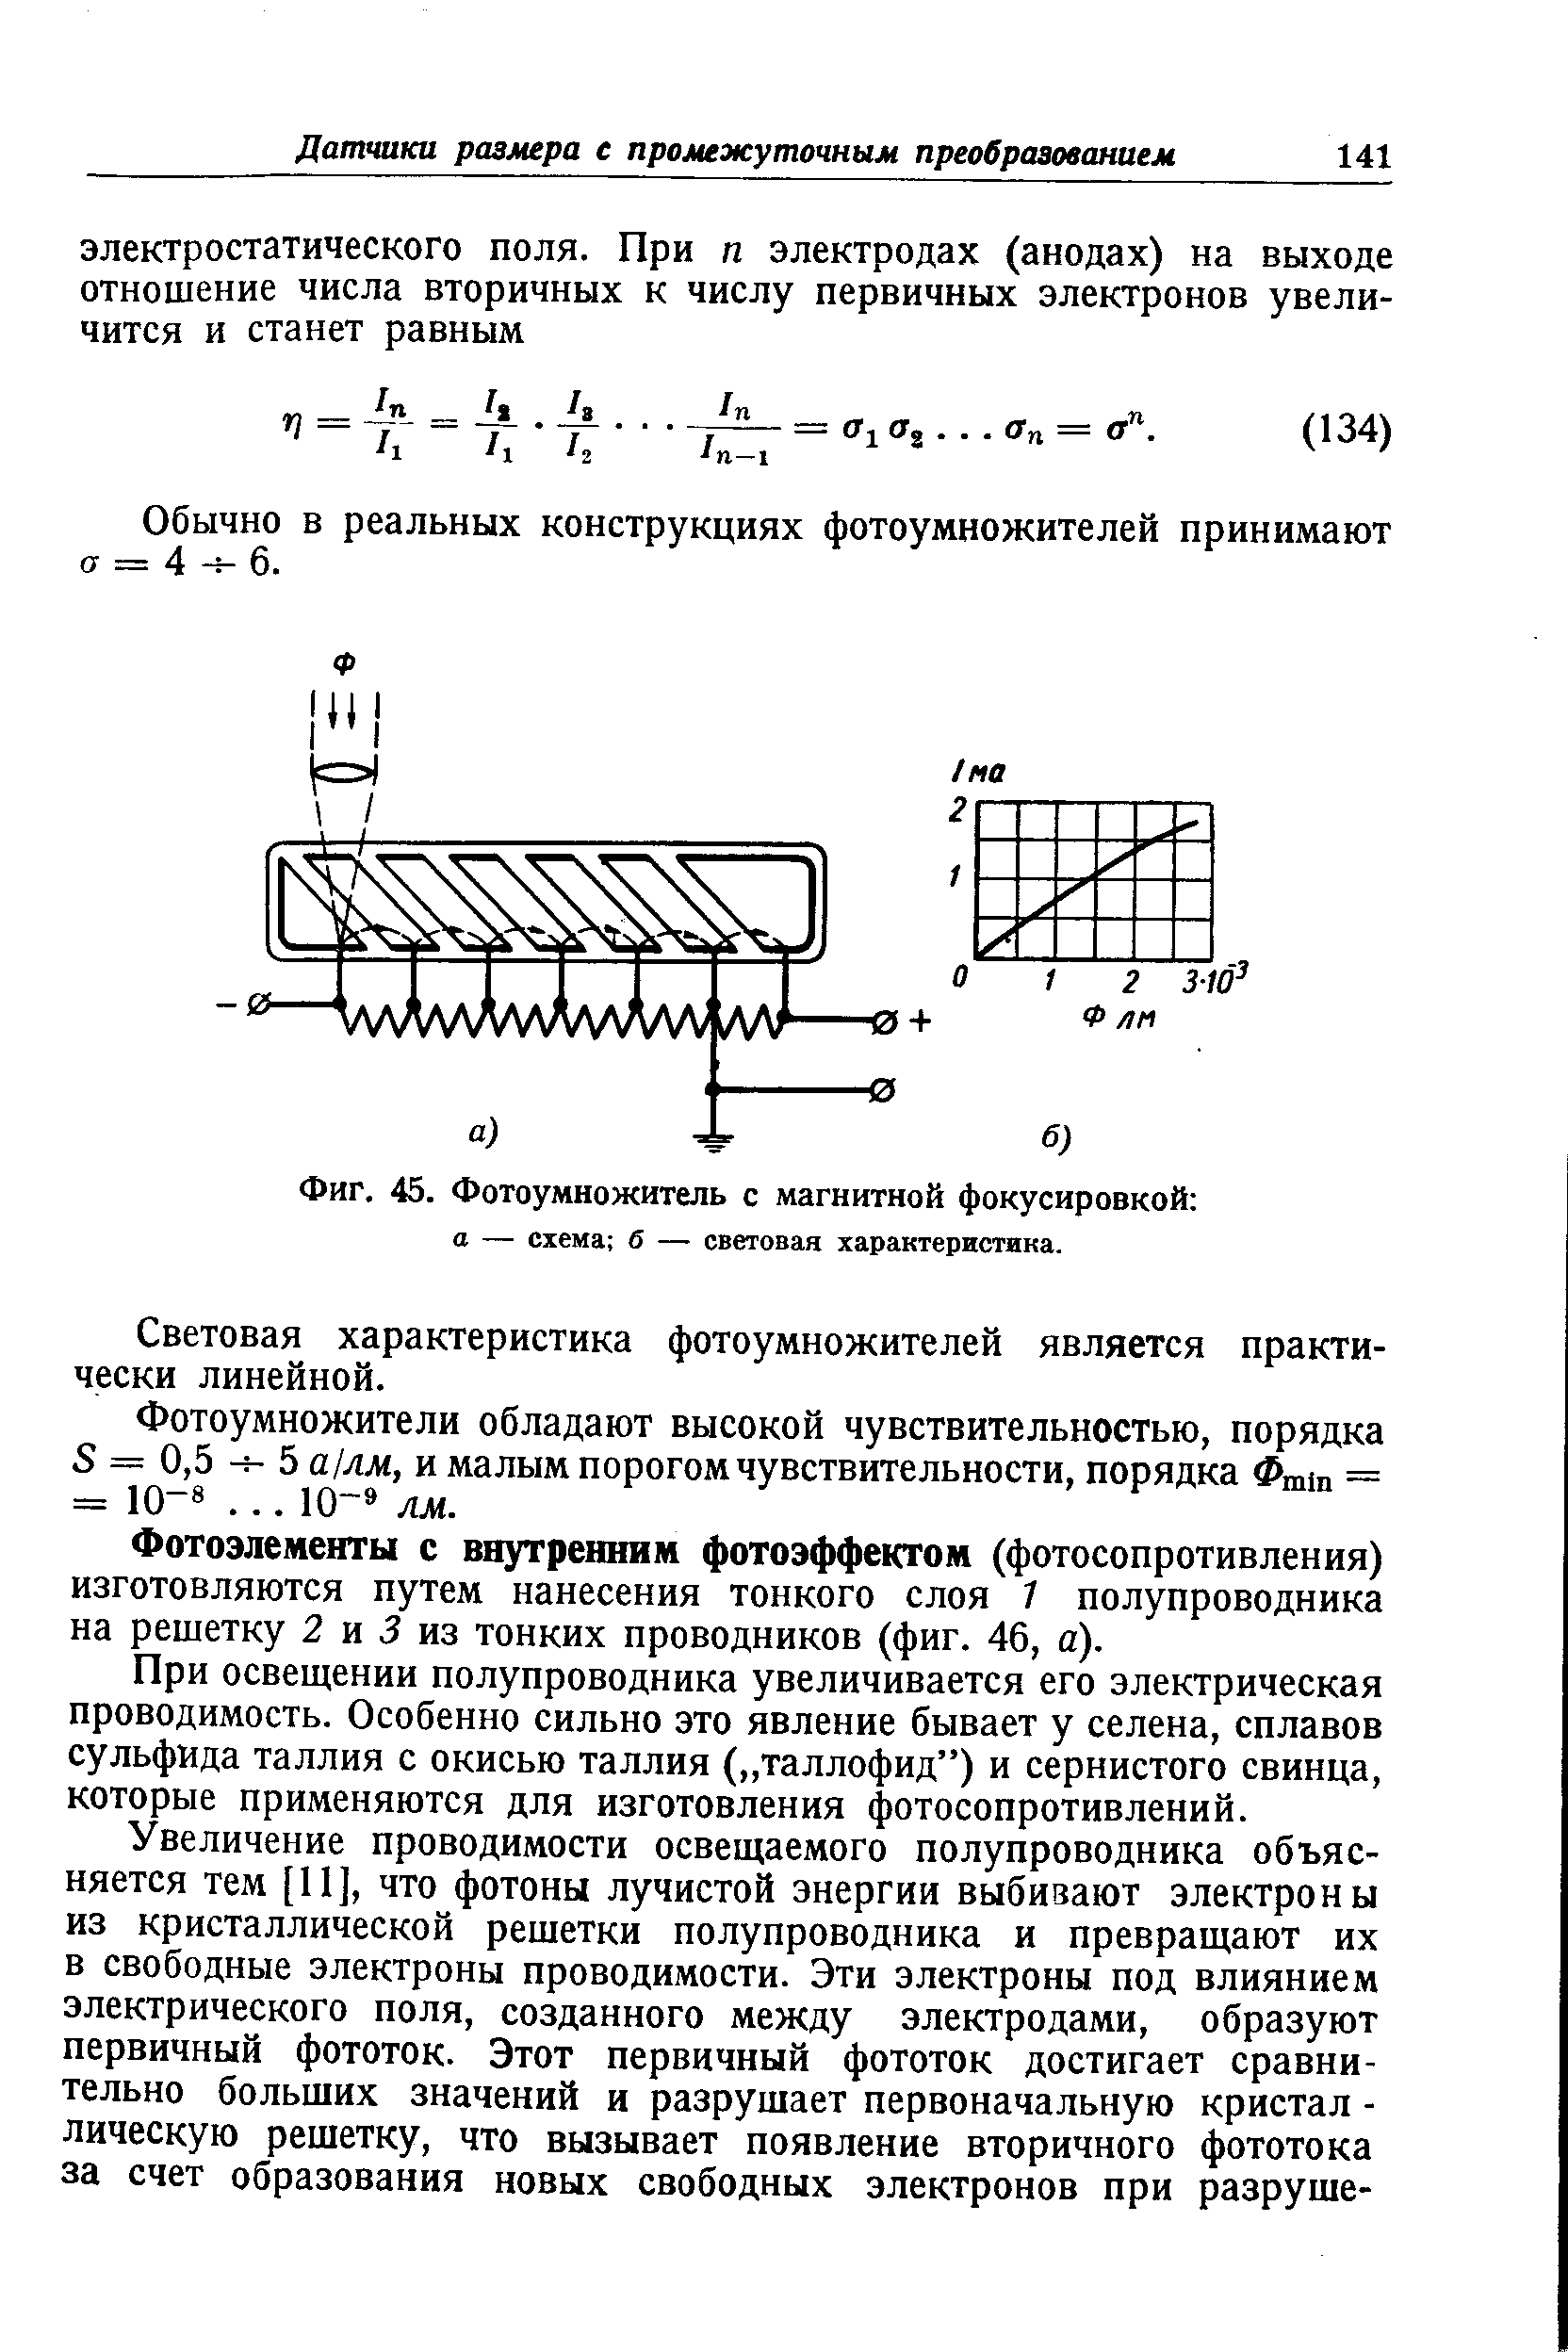 Фиг. 45. Фотоумножитель с магнитной фокусировкой а — схема б — световая характеристика.
